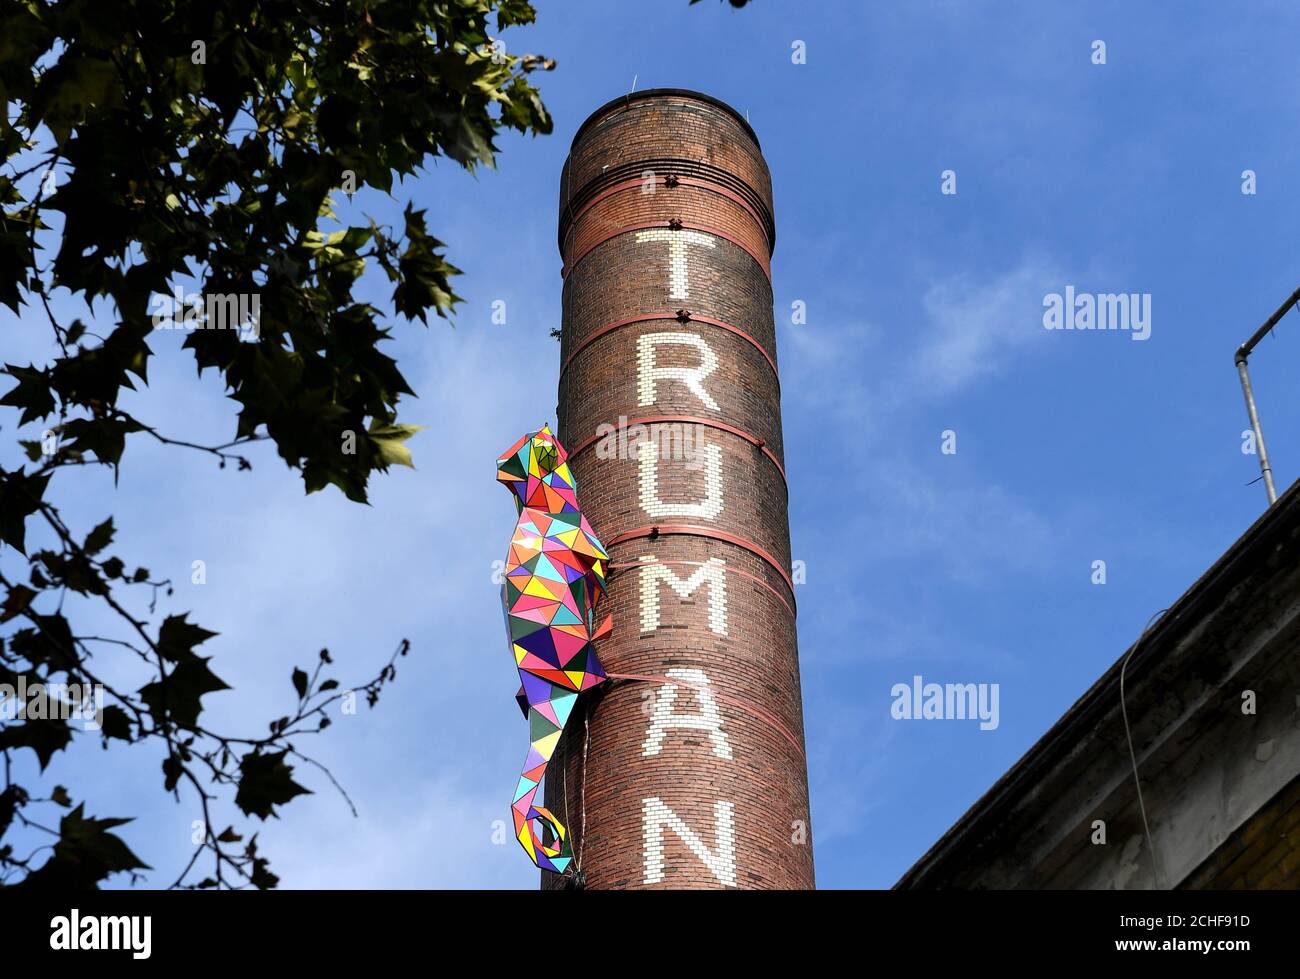 REDAKTIONELLE NUTZUNG AUF dem Schornstein der Old Truman Brewery in East London ist nur eine acht Meter lange Skulptur eines Chameleons installiert, wo es bis zum 1. September zur Eröffnung des neuen nhow Hotels in Shoreditch zu sehen sein wird. Stockfoto